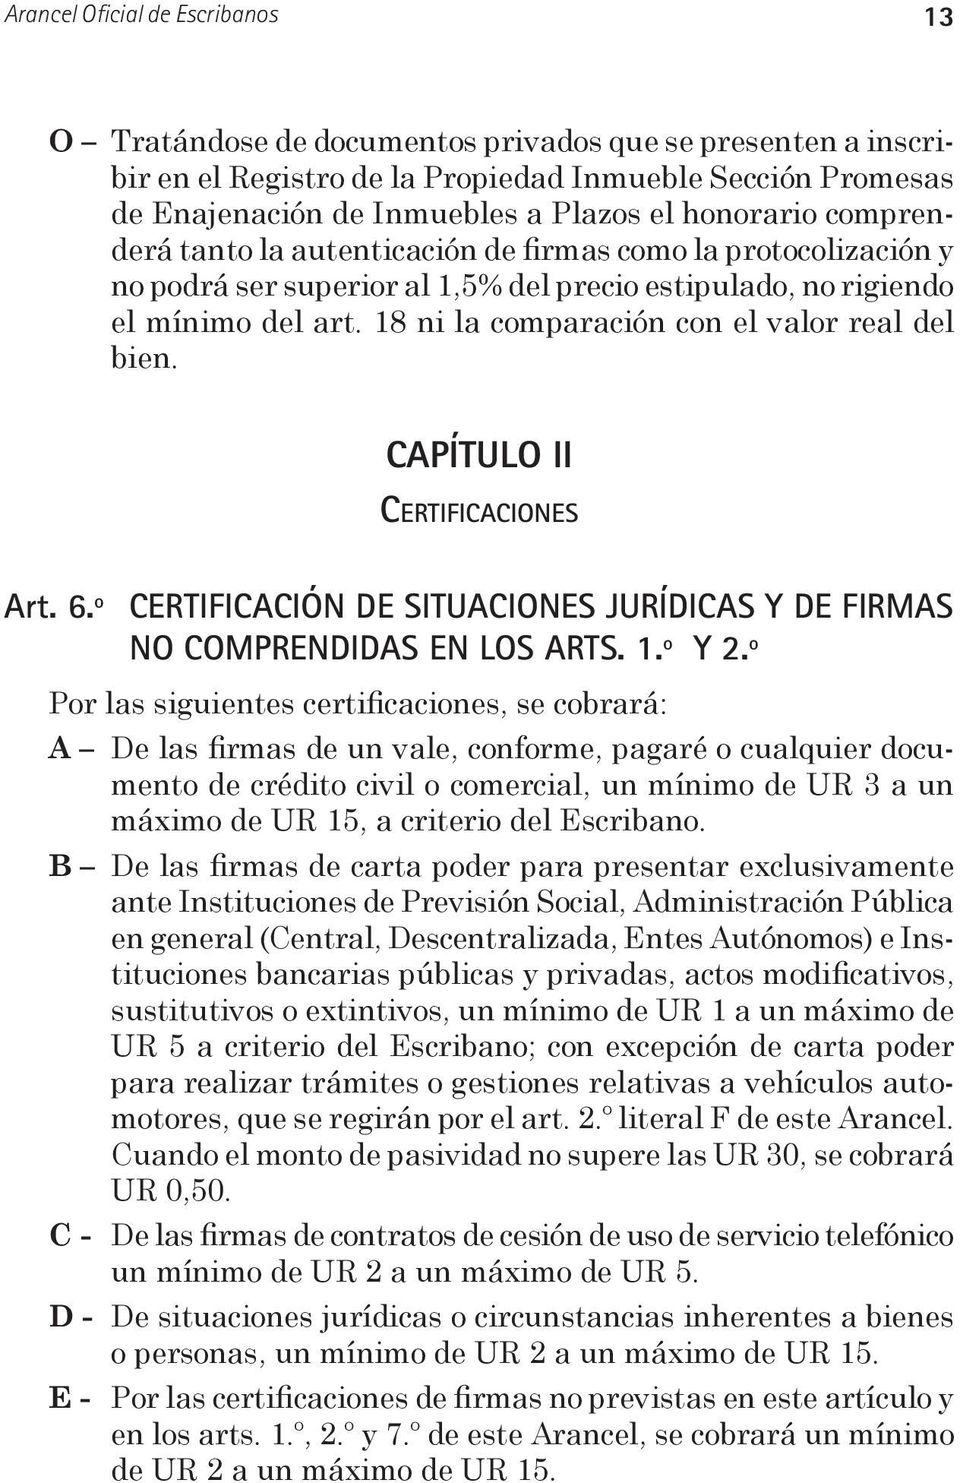 18 ni la comparación con el valor real del bien. CAPÍTULO II Certificaciones Art. 6.º CERTIFICACIÓN DE SITUACIONES JURÍDICAS Y DE FIRMAS NO COMPRENDIDAS EN LOS ARTS. 1.º Y 2.